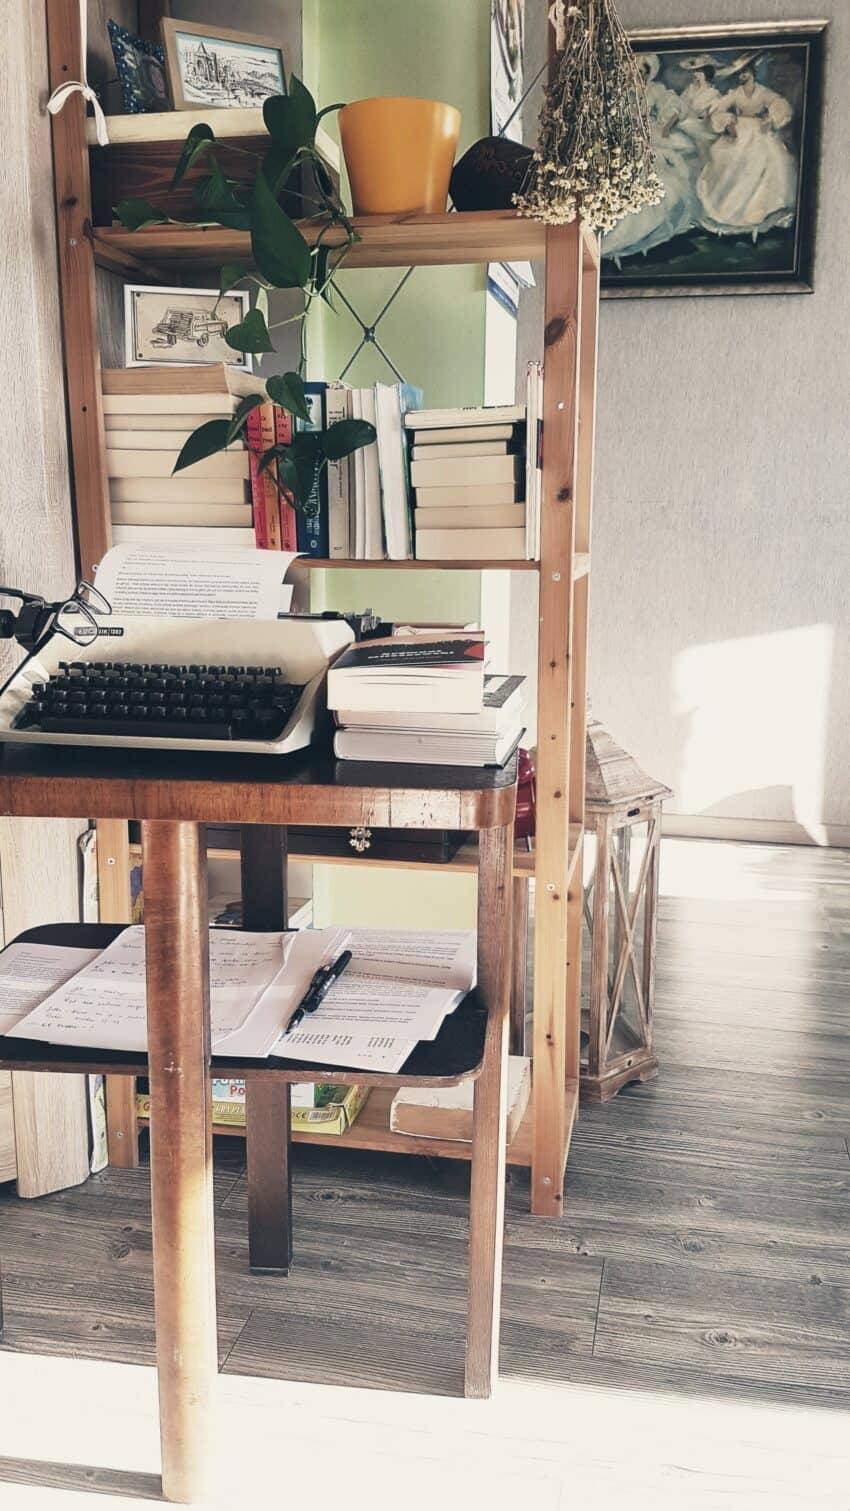 opowieści rodzinne - regał, maszyna do pisania, dużo słońca - pisarski warsztat